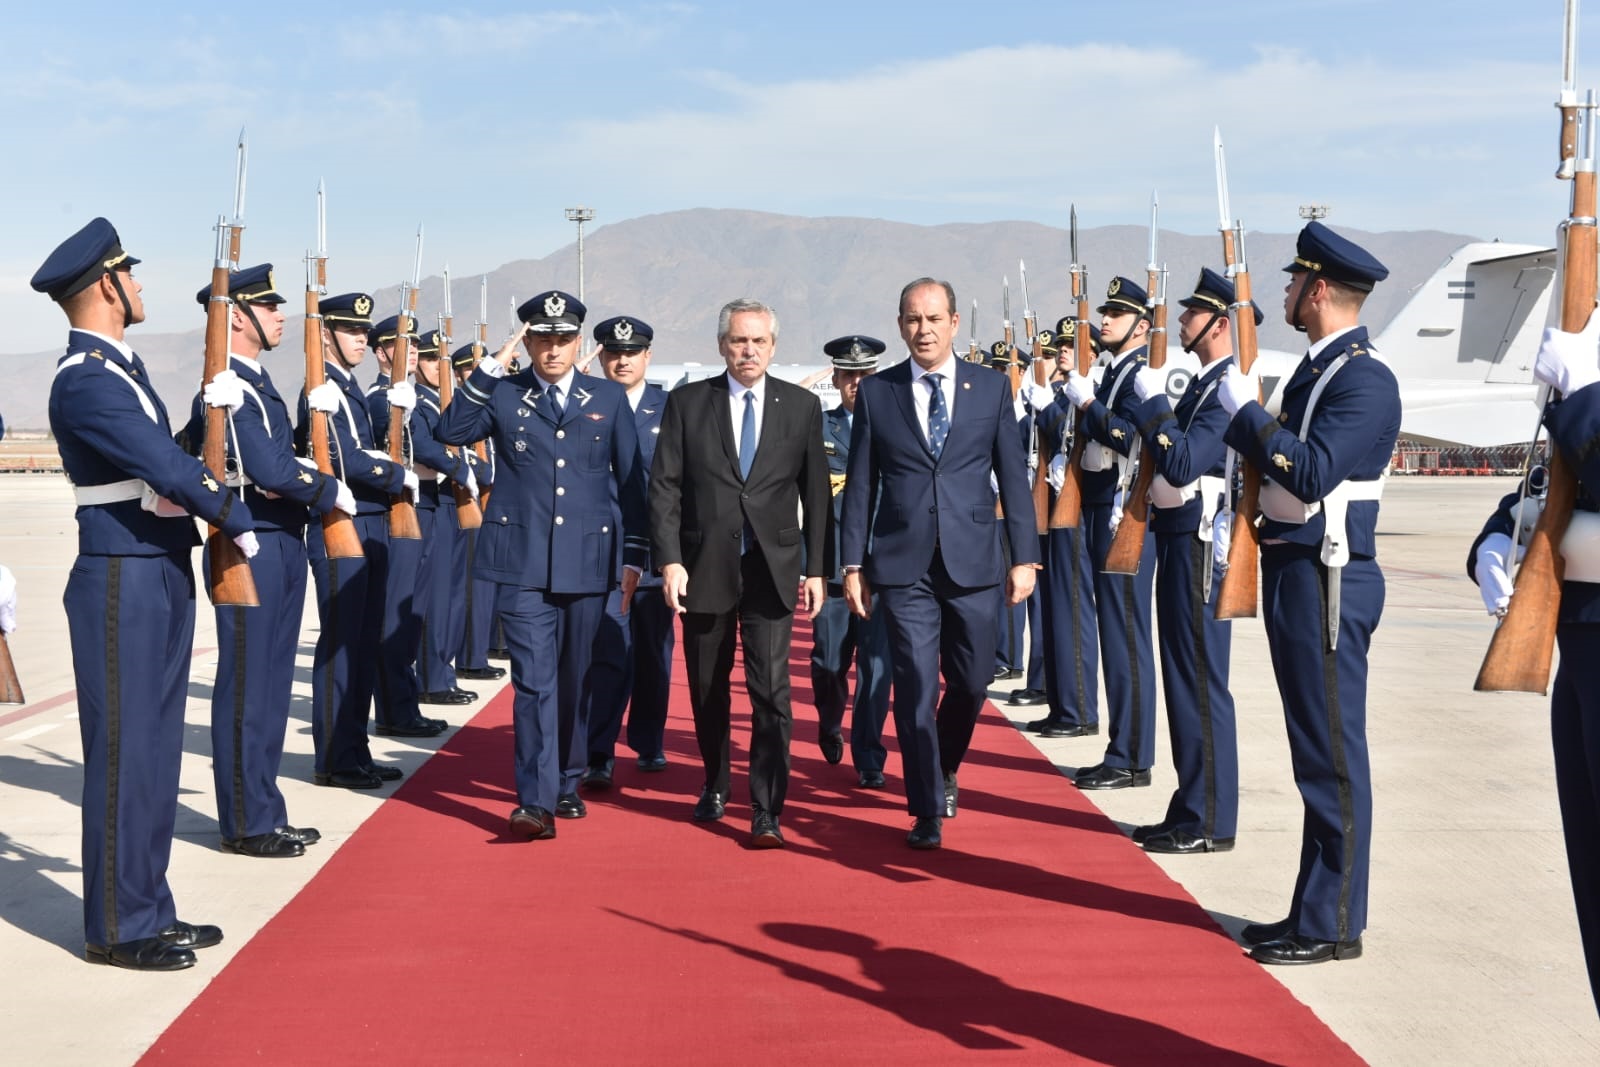 El presidente arribó a Chile para encabezar la ceremonia de conmemoración del 205° aniversario del Abrazo de Maipú